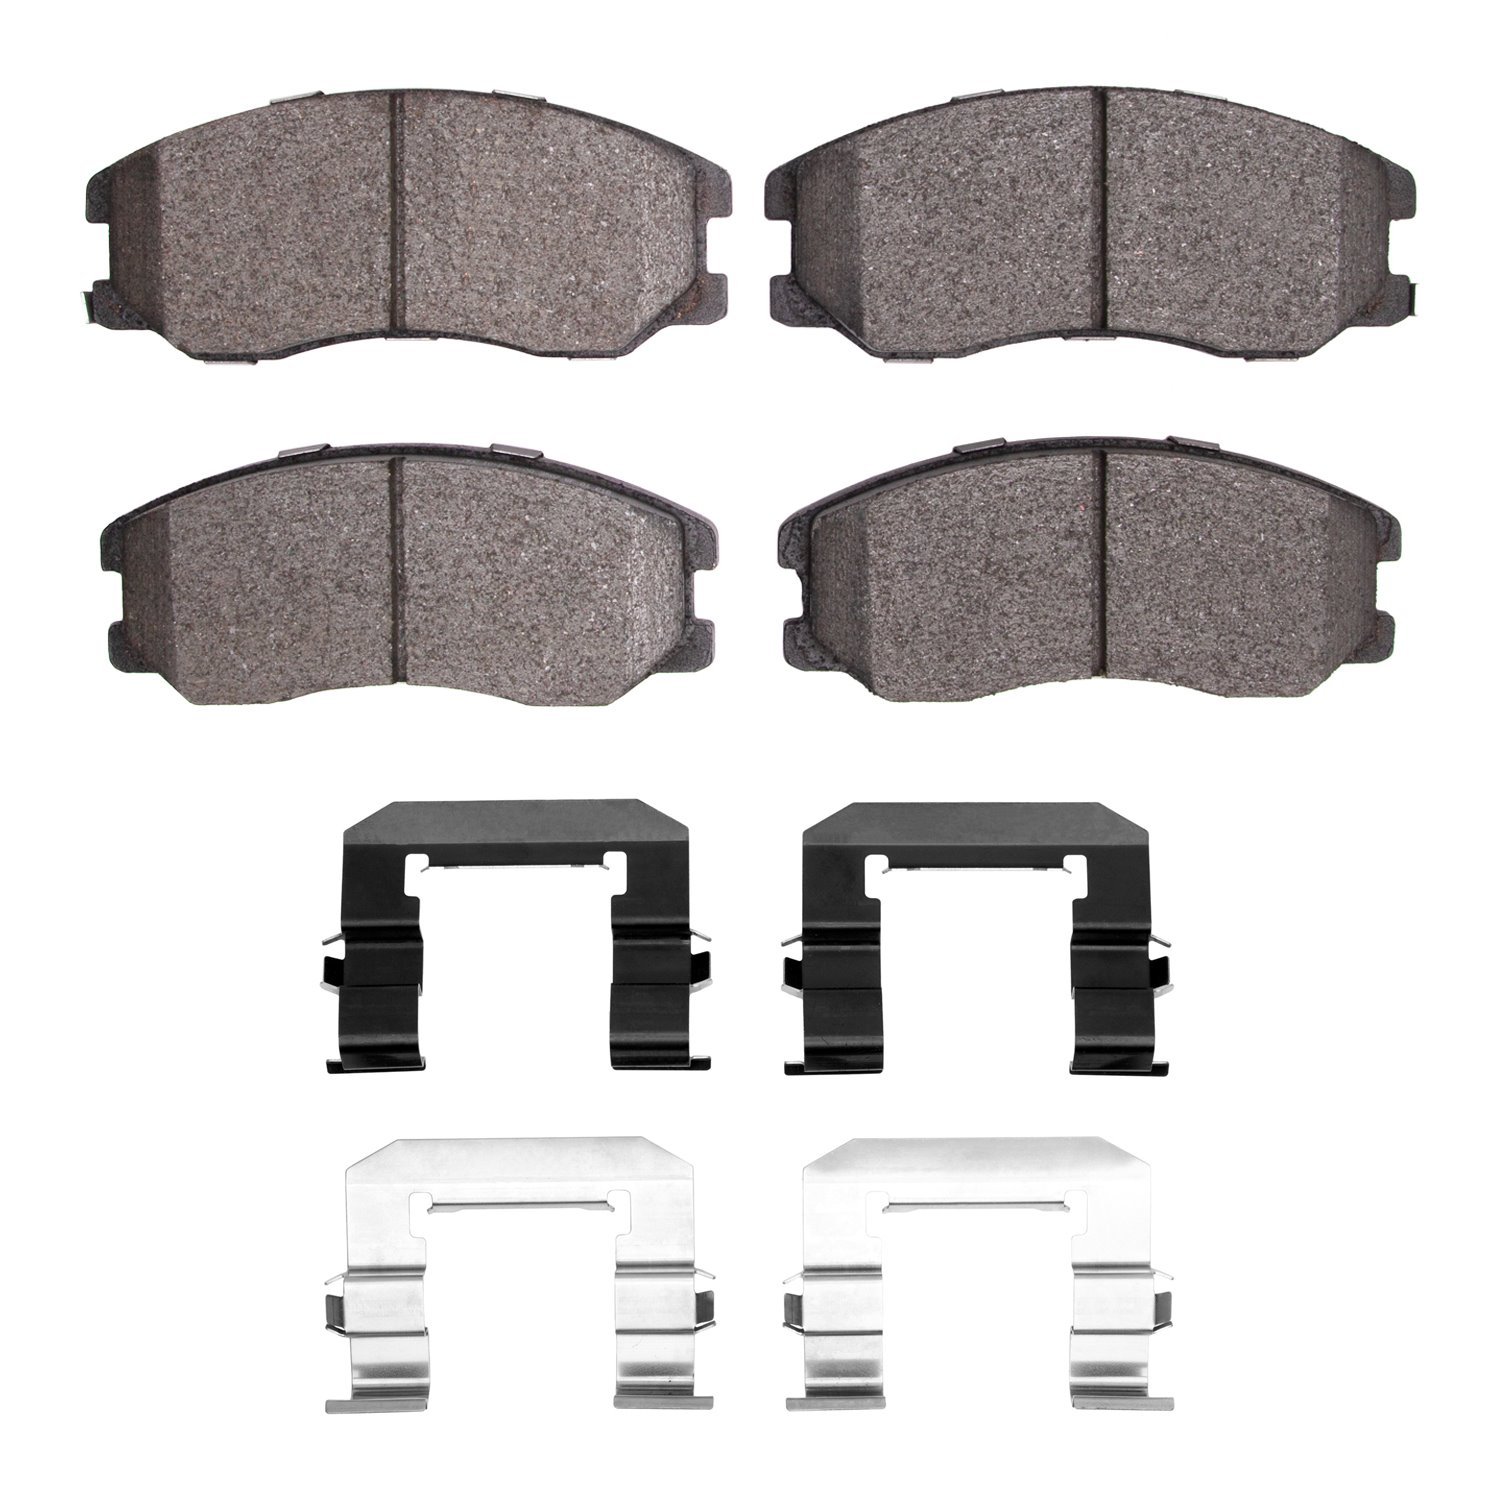 1310-1264-01 3000-Series Ceramic Brake Pads & Hardware Kit, 2007-2015 GM, Position: Front